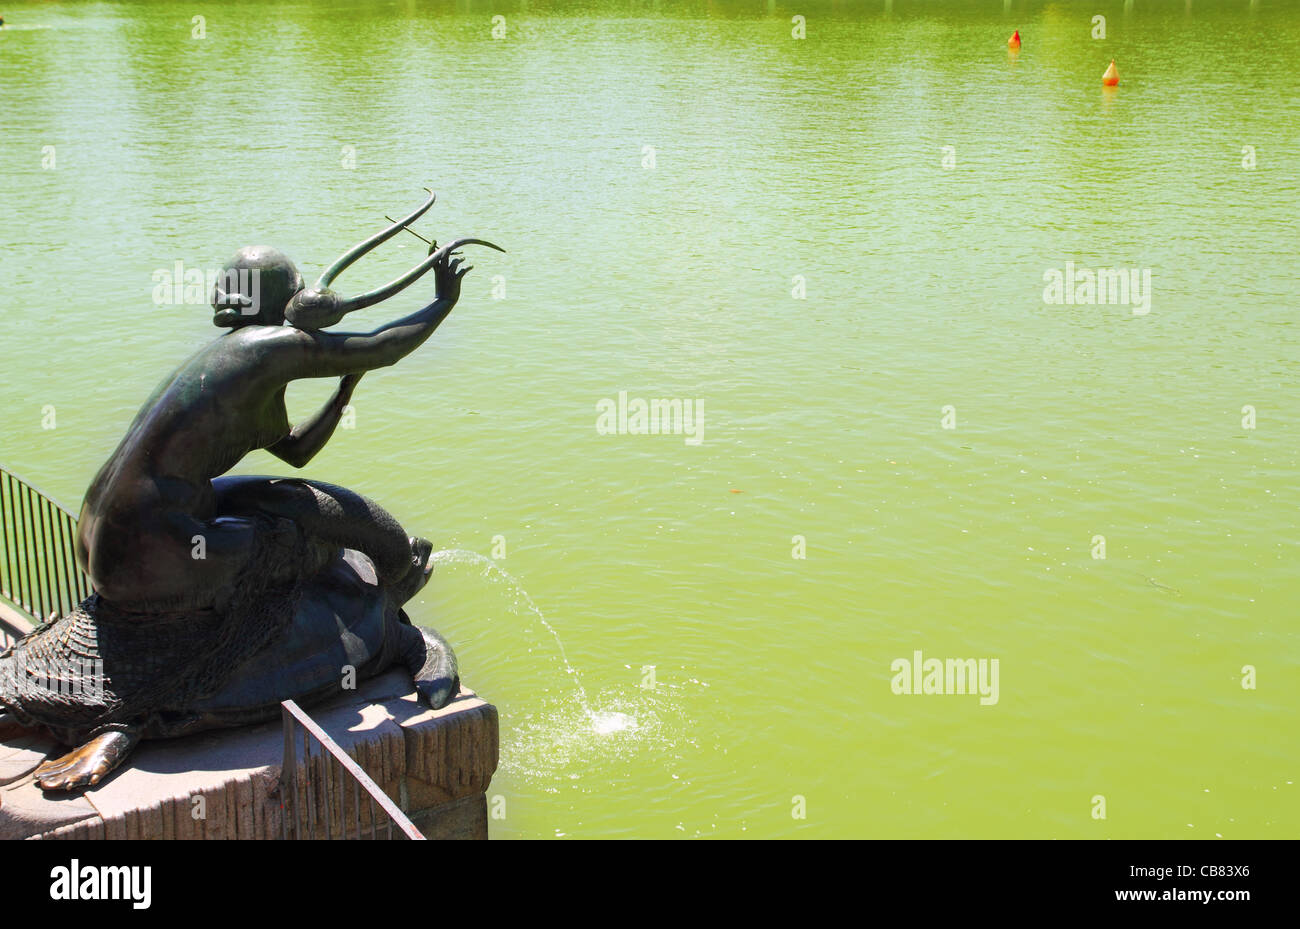 Mermaid lagoon immagini e fotografie stock ad alta risoluzione - Alamy